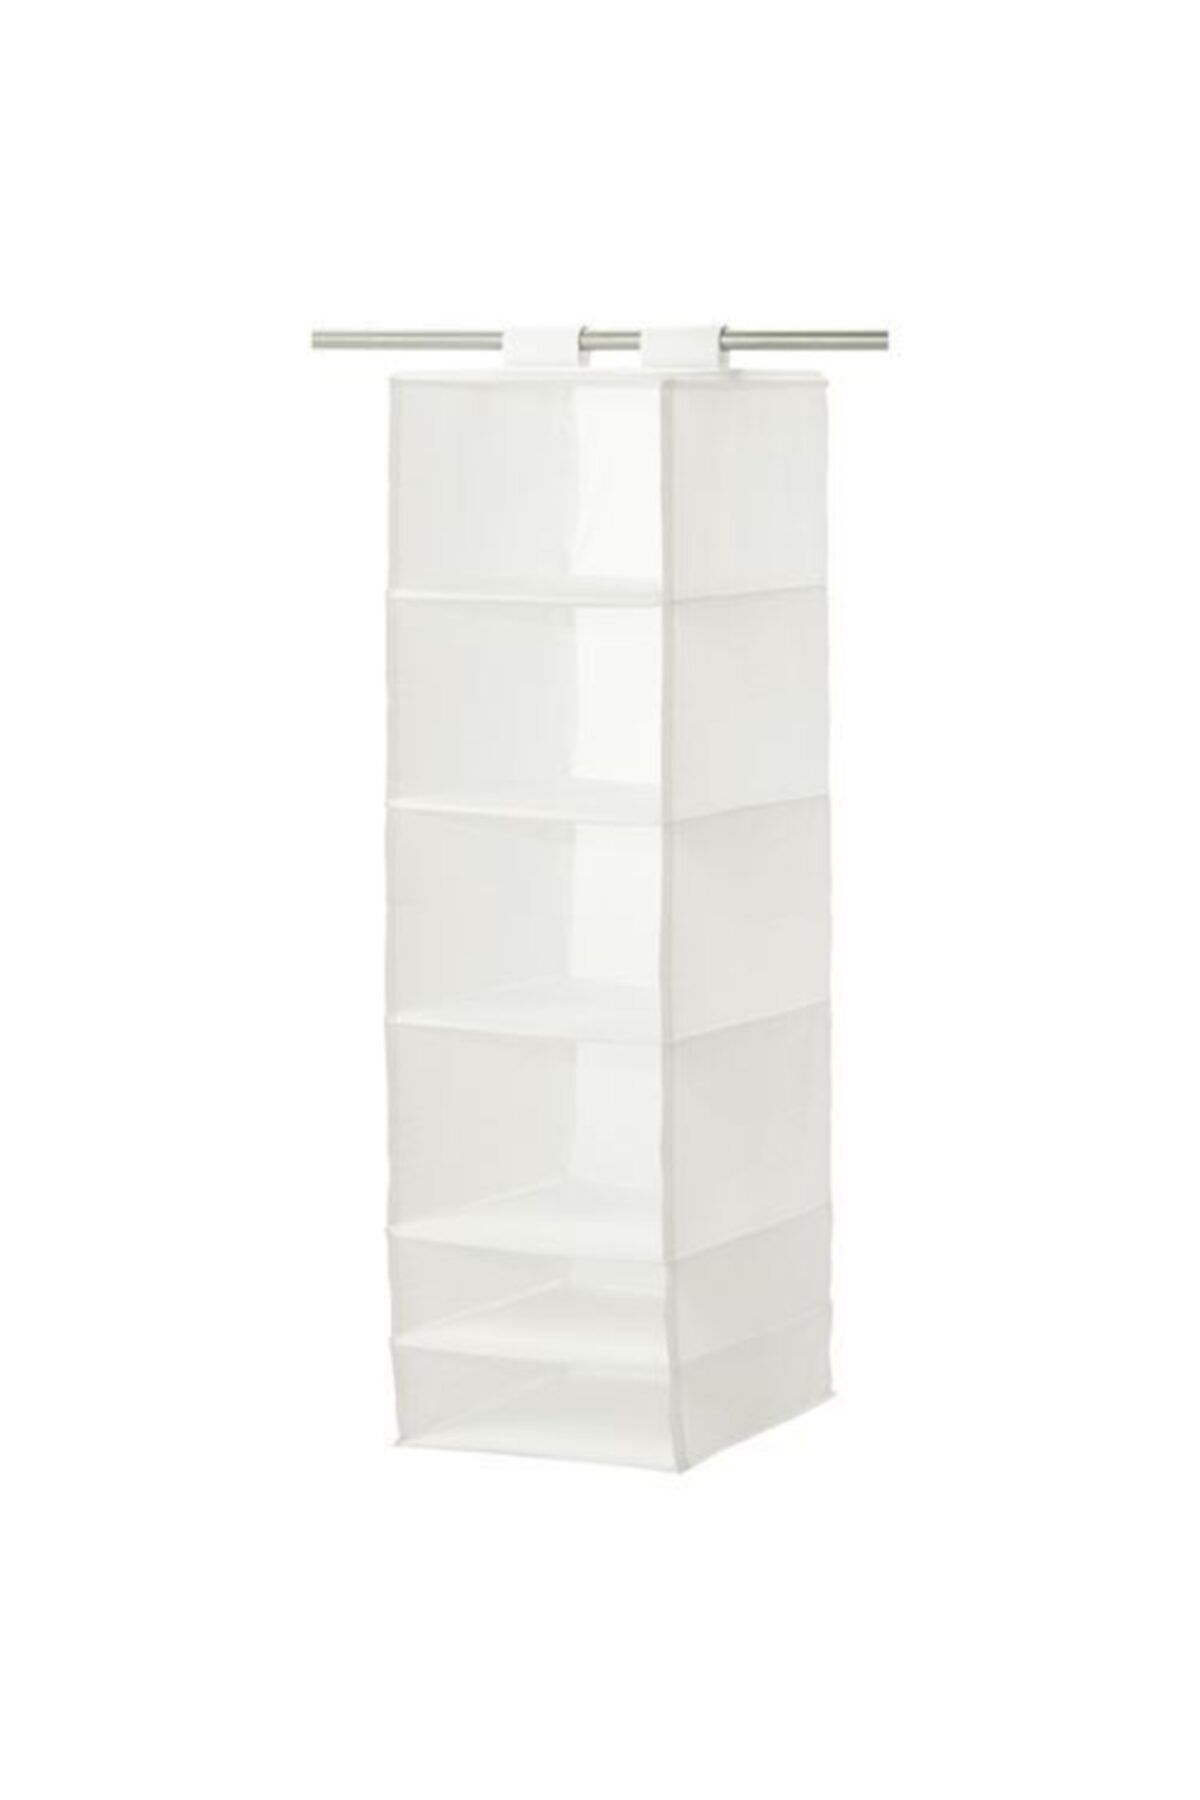 IKEA Dolap Içi Bölmeli Düzenleyici Ölçü 35x45x125 Cm Beyaz Renk Meridyendukkan Bölmeli Düzenleyici